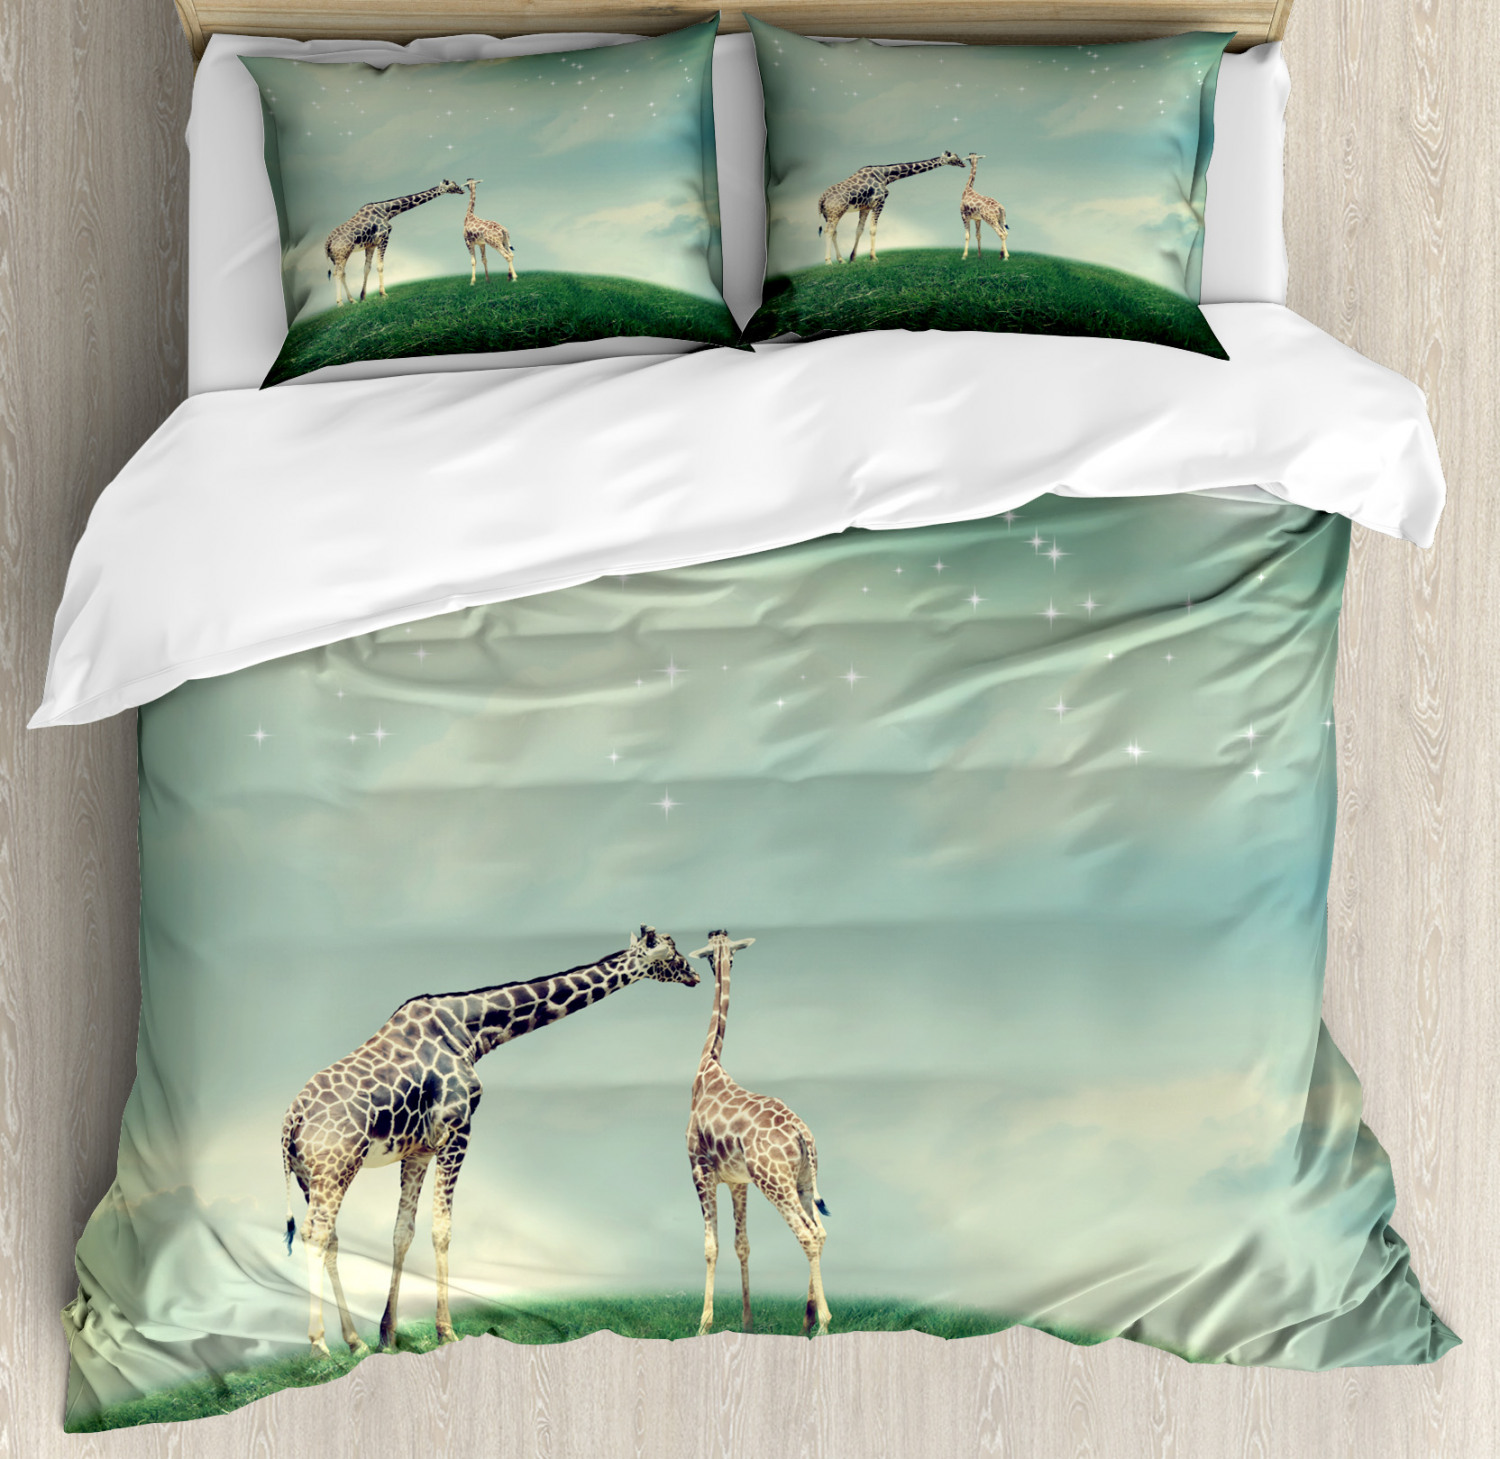 Giraffe Duvet Cover Set With Pillow Shams Fairytale Atmosphere